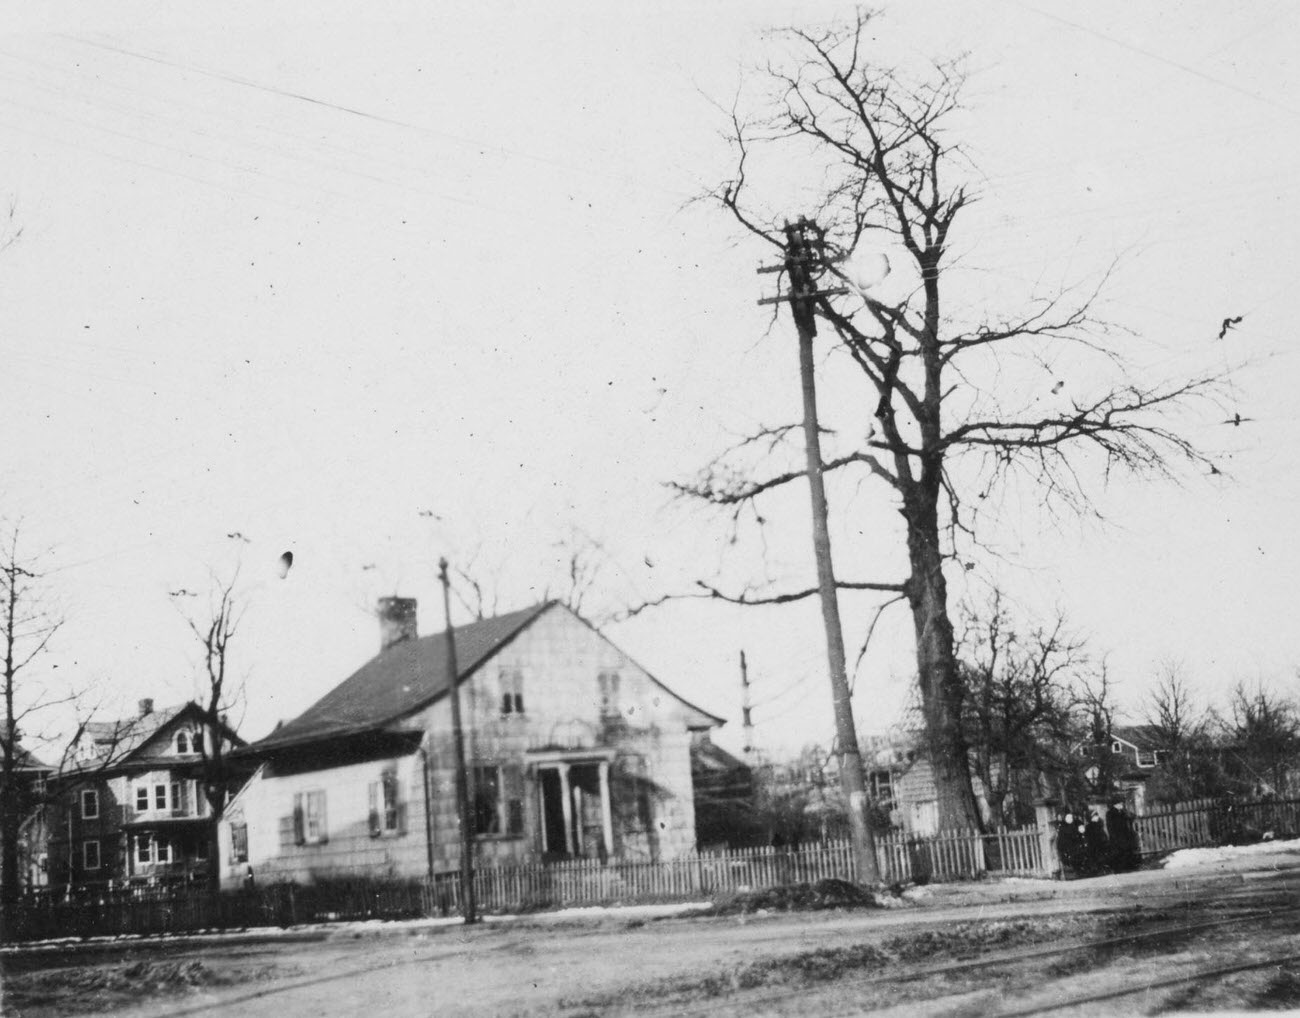 Cortelyou House, Built 1765, Northwest Corner Of Flatbush Avenue And Cortelyou Road, House Demolished 1912